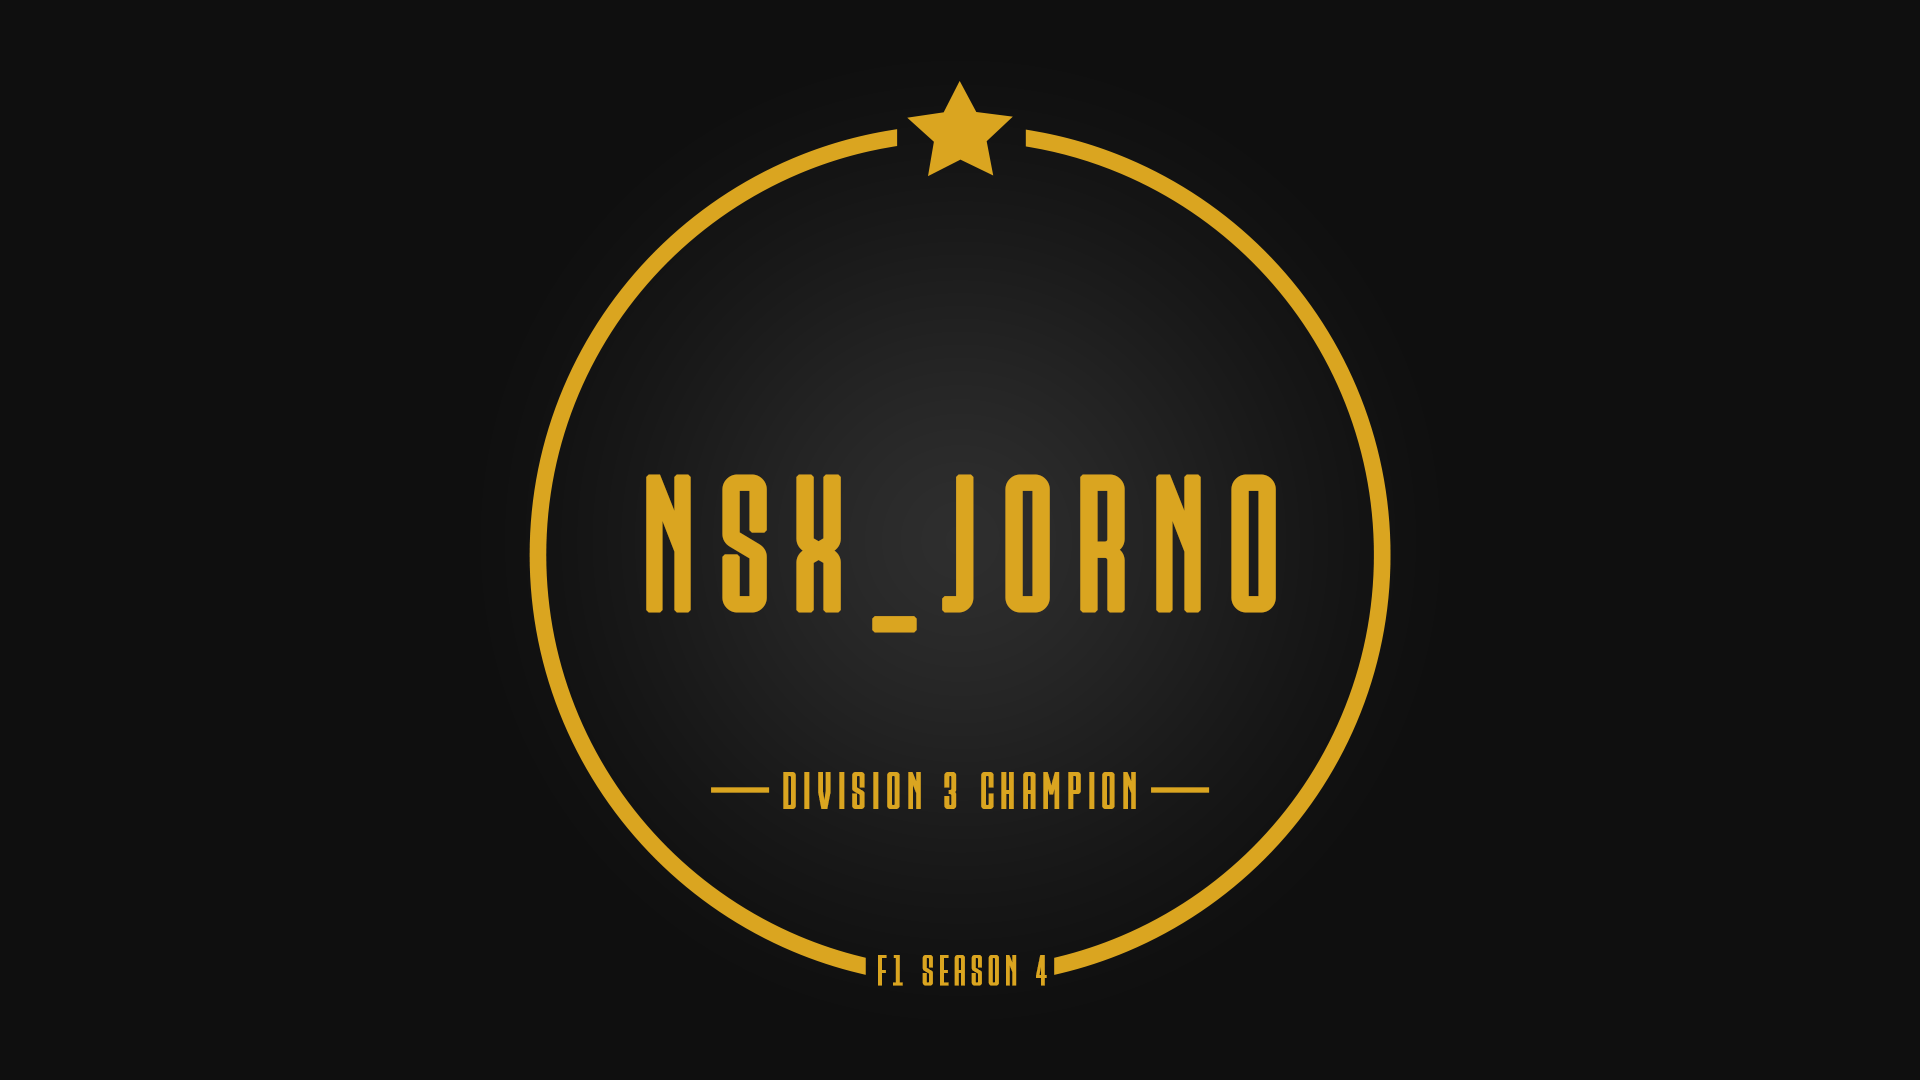 Division 3 Champion - NSX_Jorno